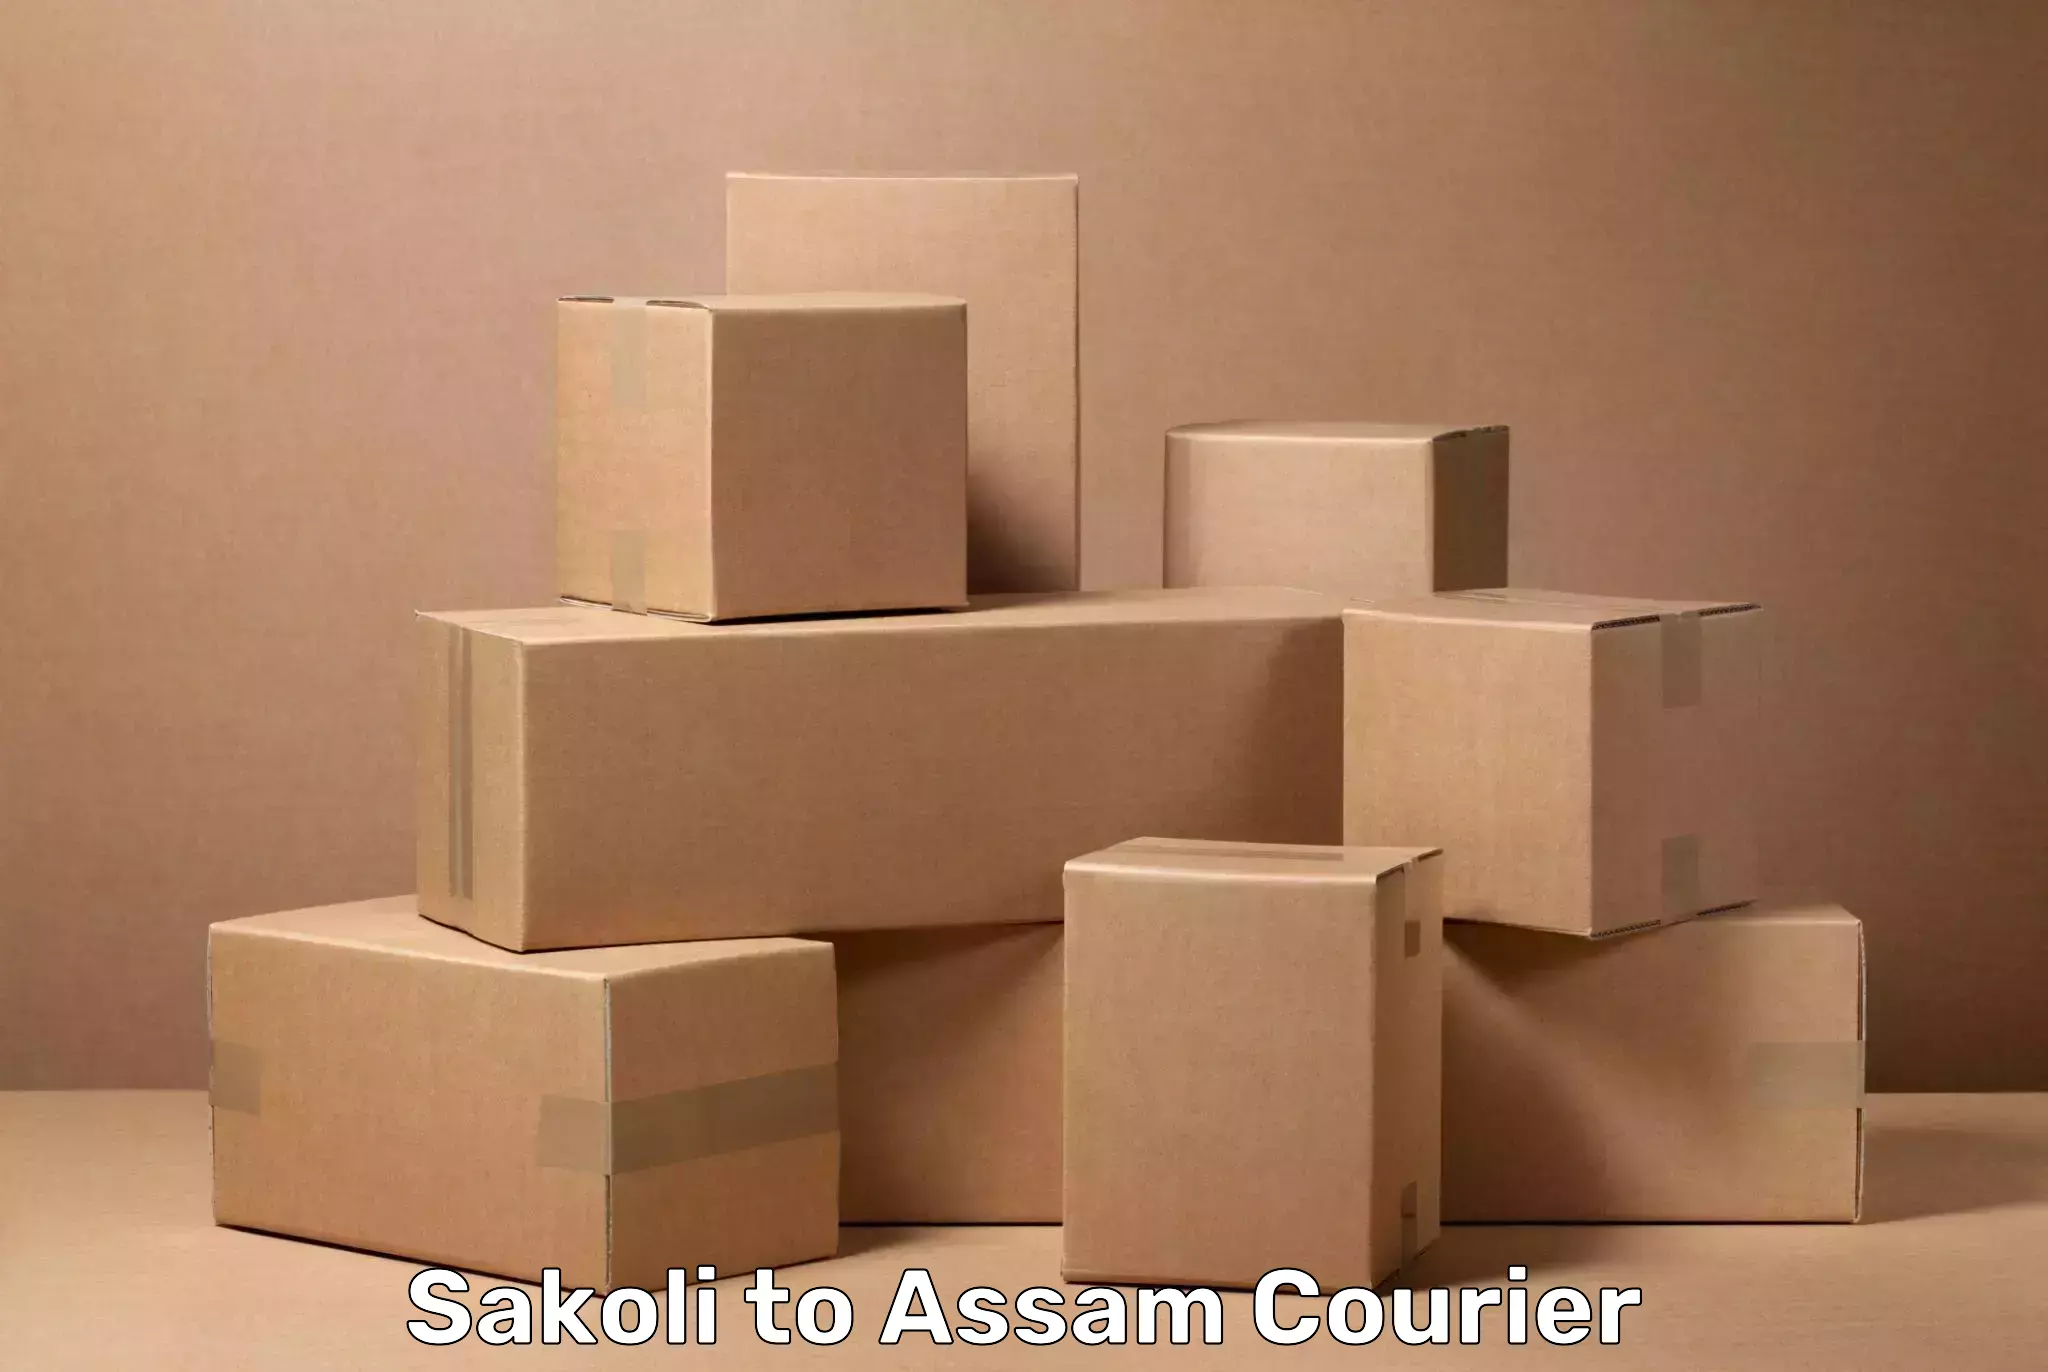 Baggage transport scheduler Sakoli to Assam